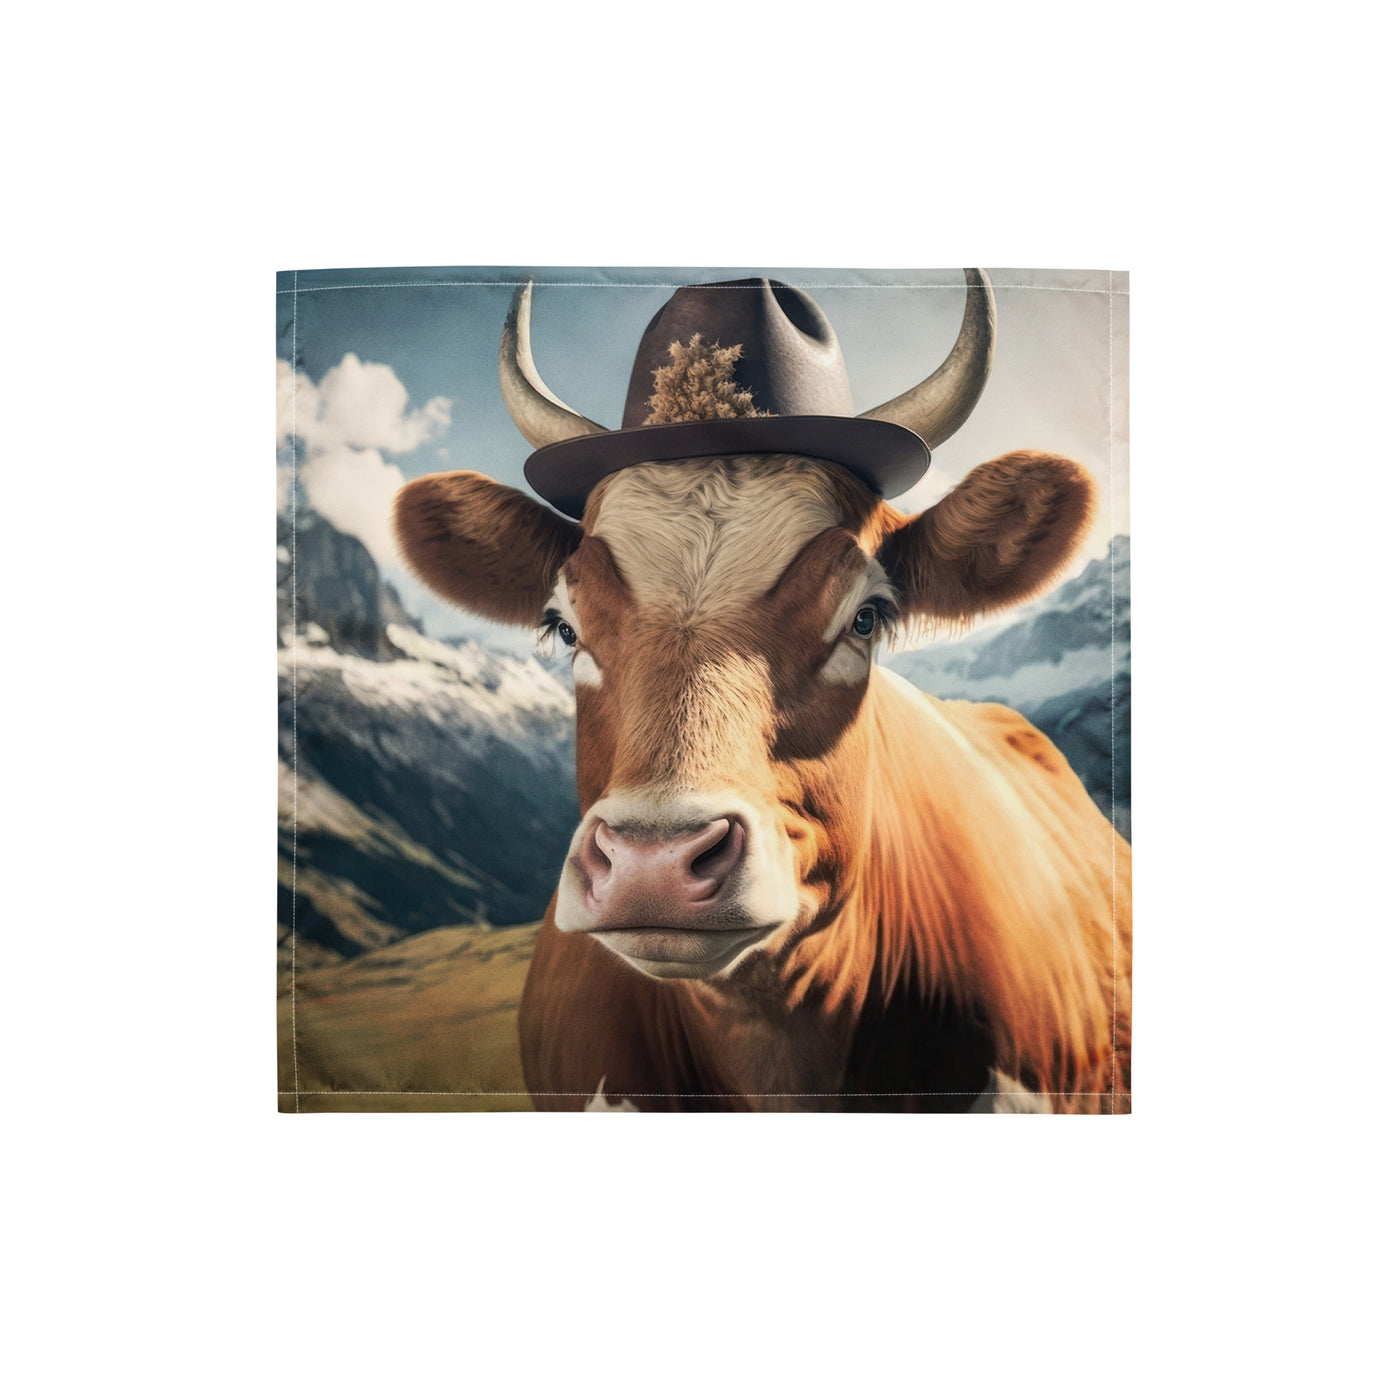 Kuh mit Hut in den Alpen - Berge im Hintergrund - Landschaftsmalerei - Bandana (All-Over Print) berge xxx S